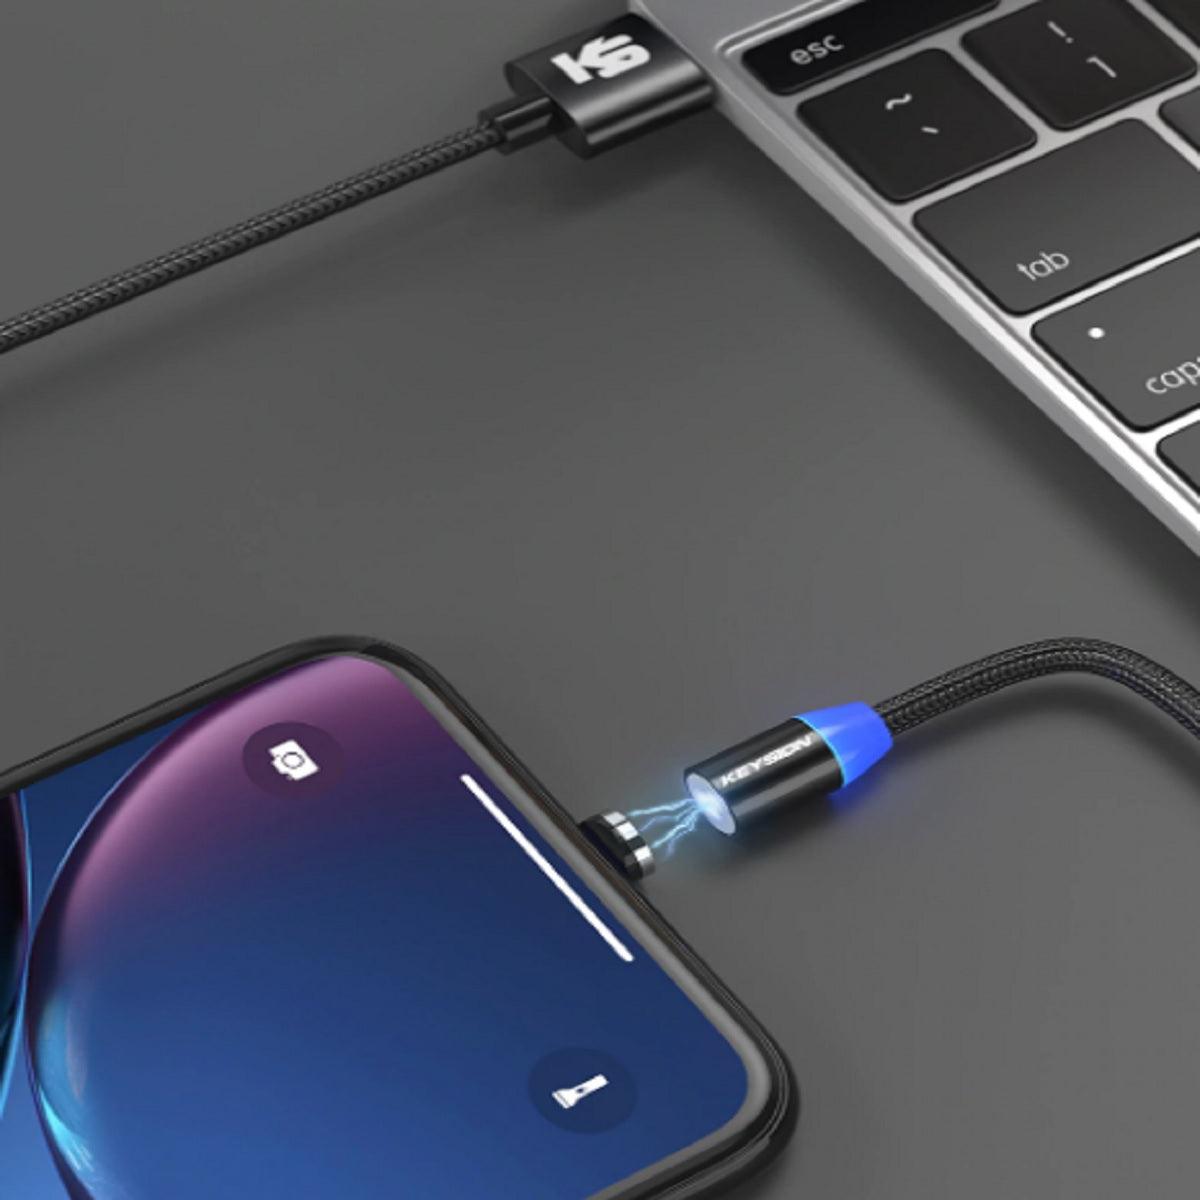 Premium Magnetic USB Cable - Type-C, For iPhone, Micro USB - dealskart.com.au